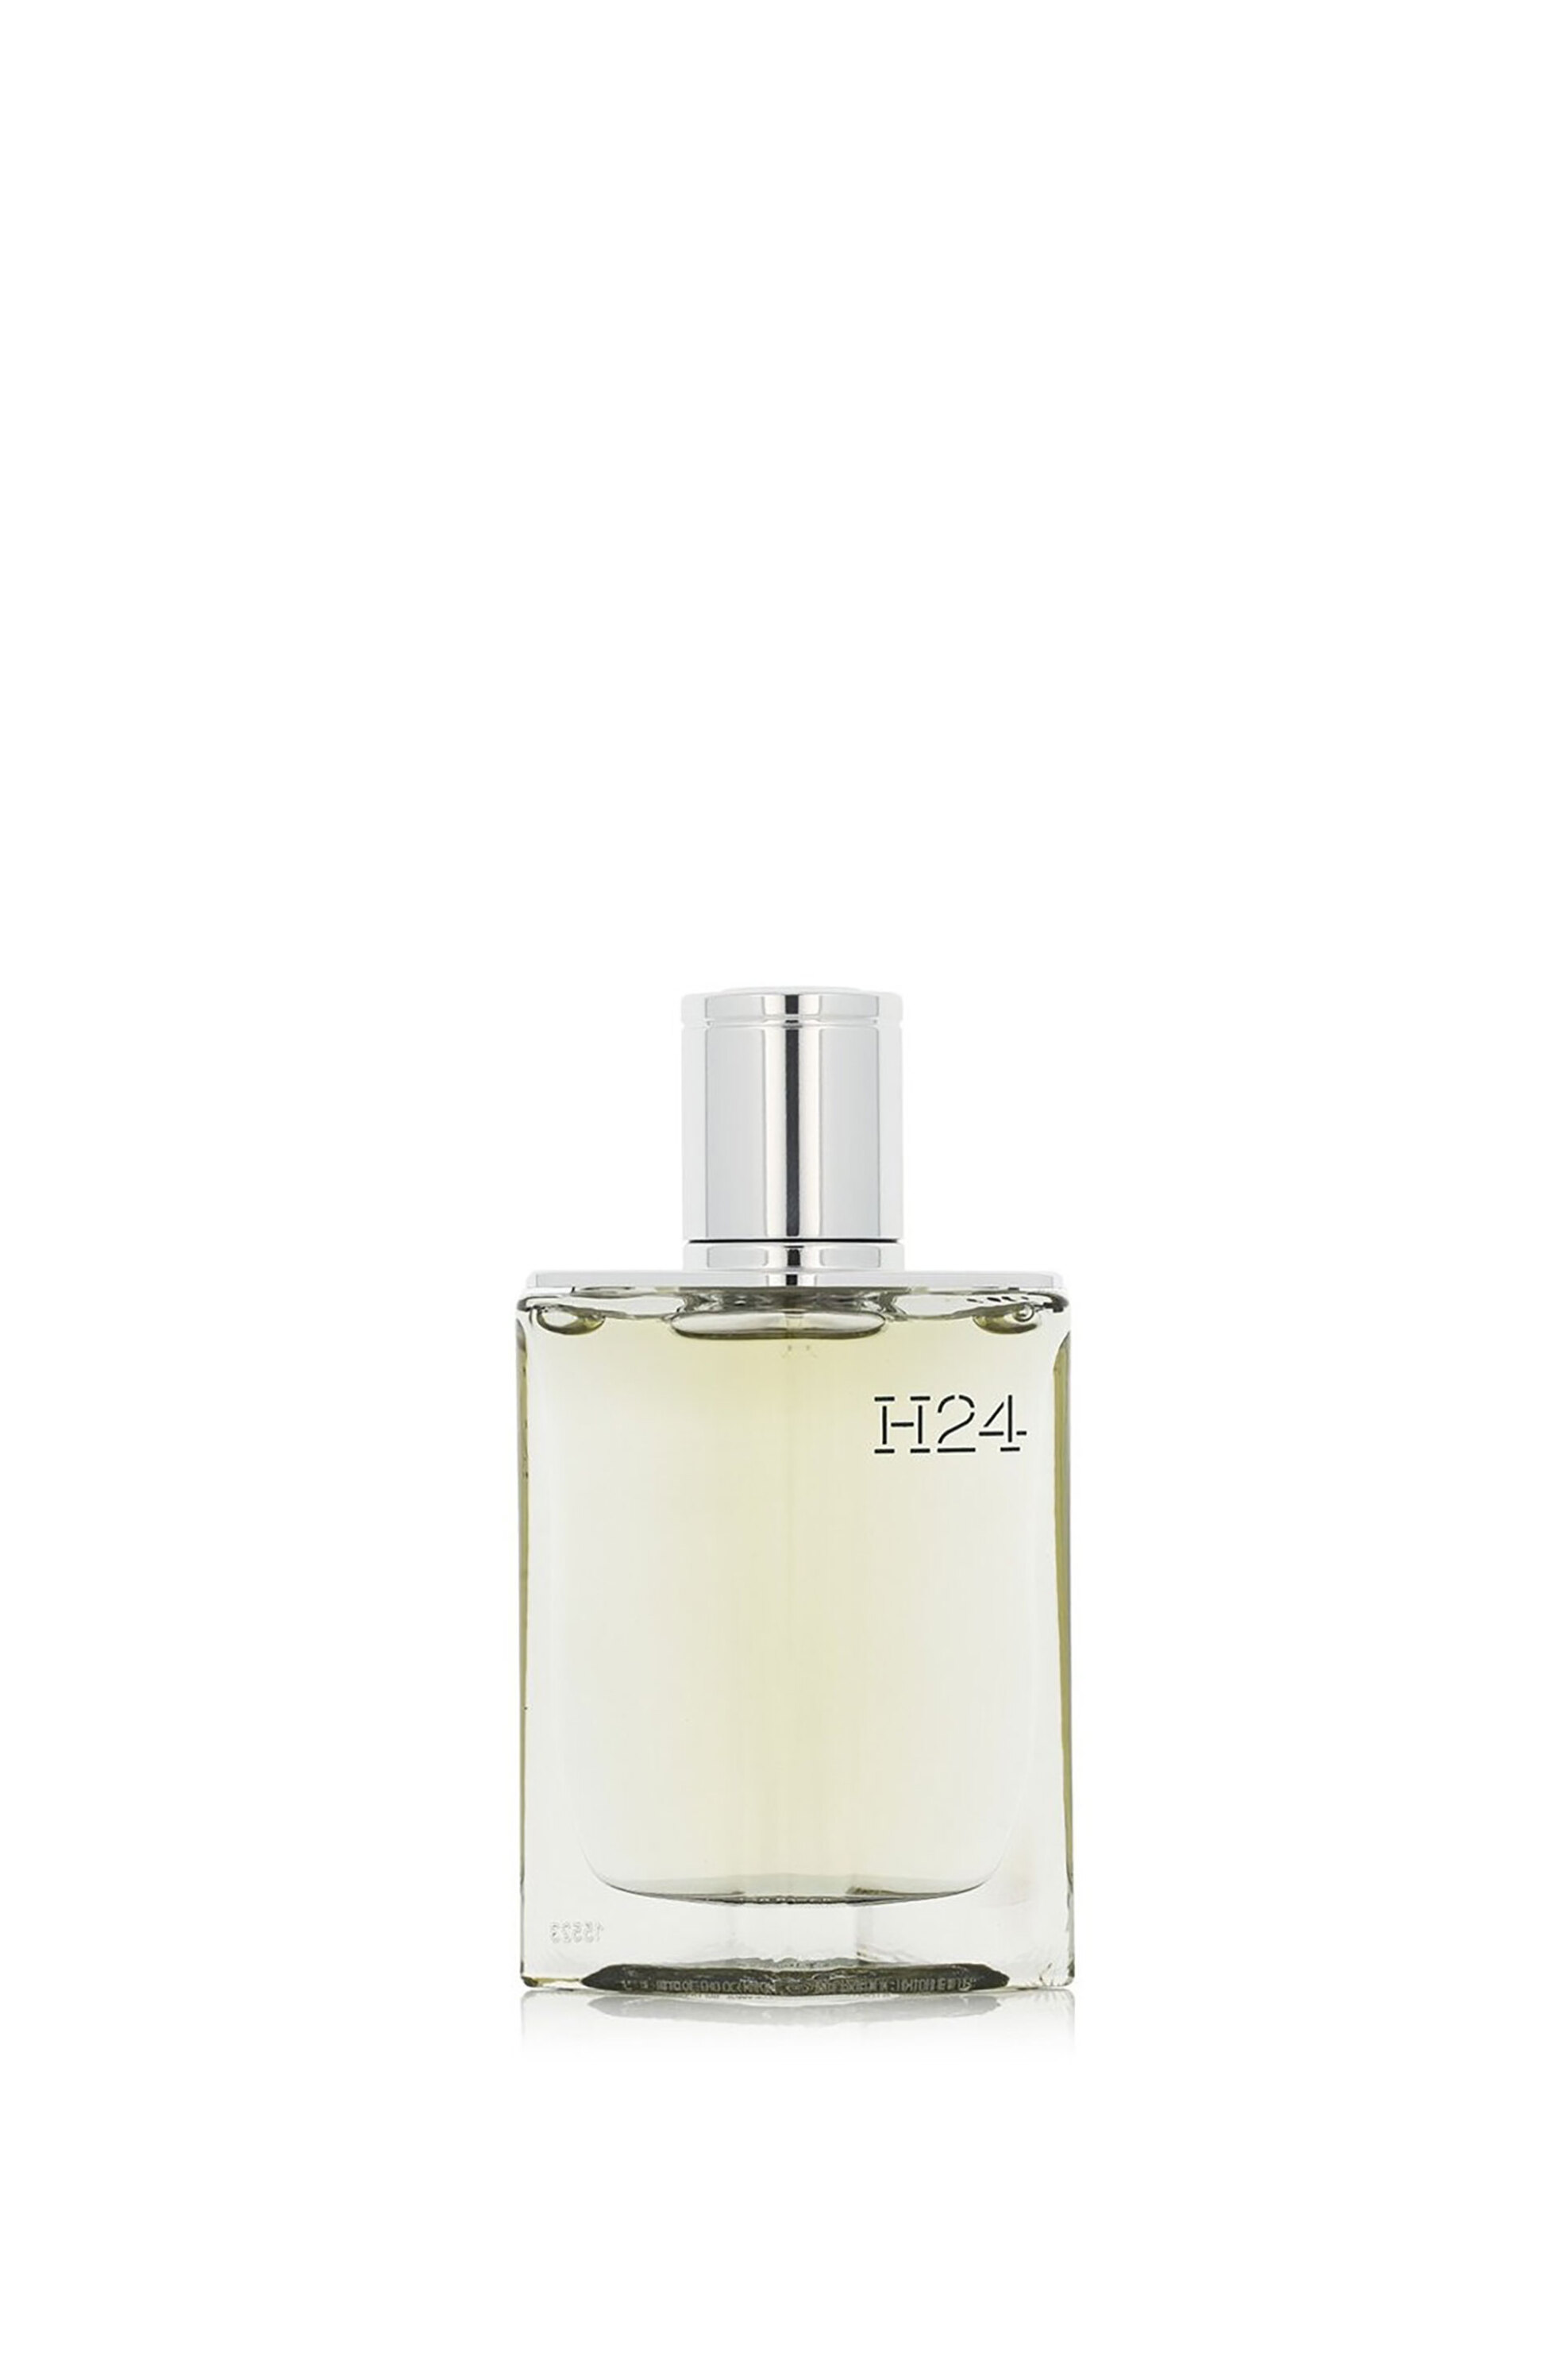 Προϊόντα Ομορφιάς > ΑΡΩΜΑΤΑ > Ανδρικά Αρώματα > Eau de Parfum - Parfum Hermès H24 Eau de Parfum